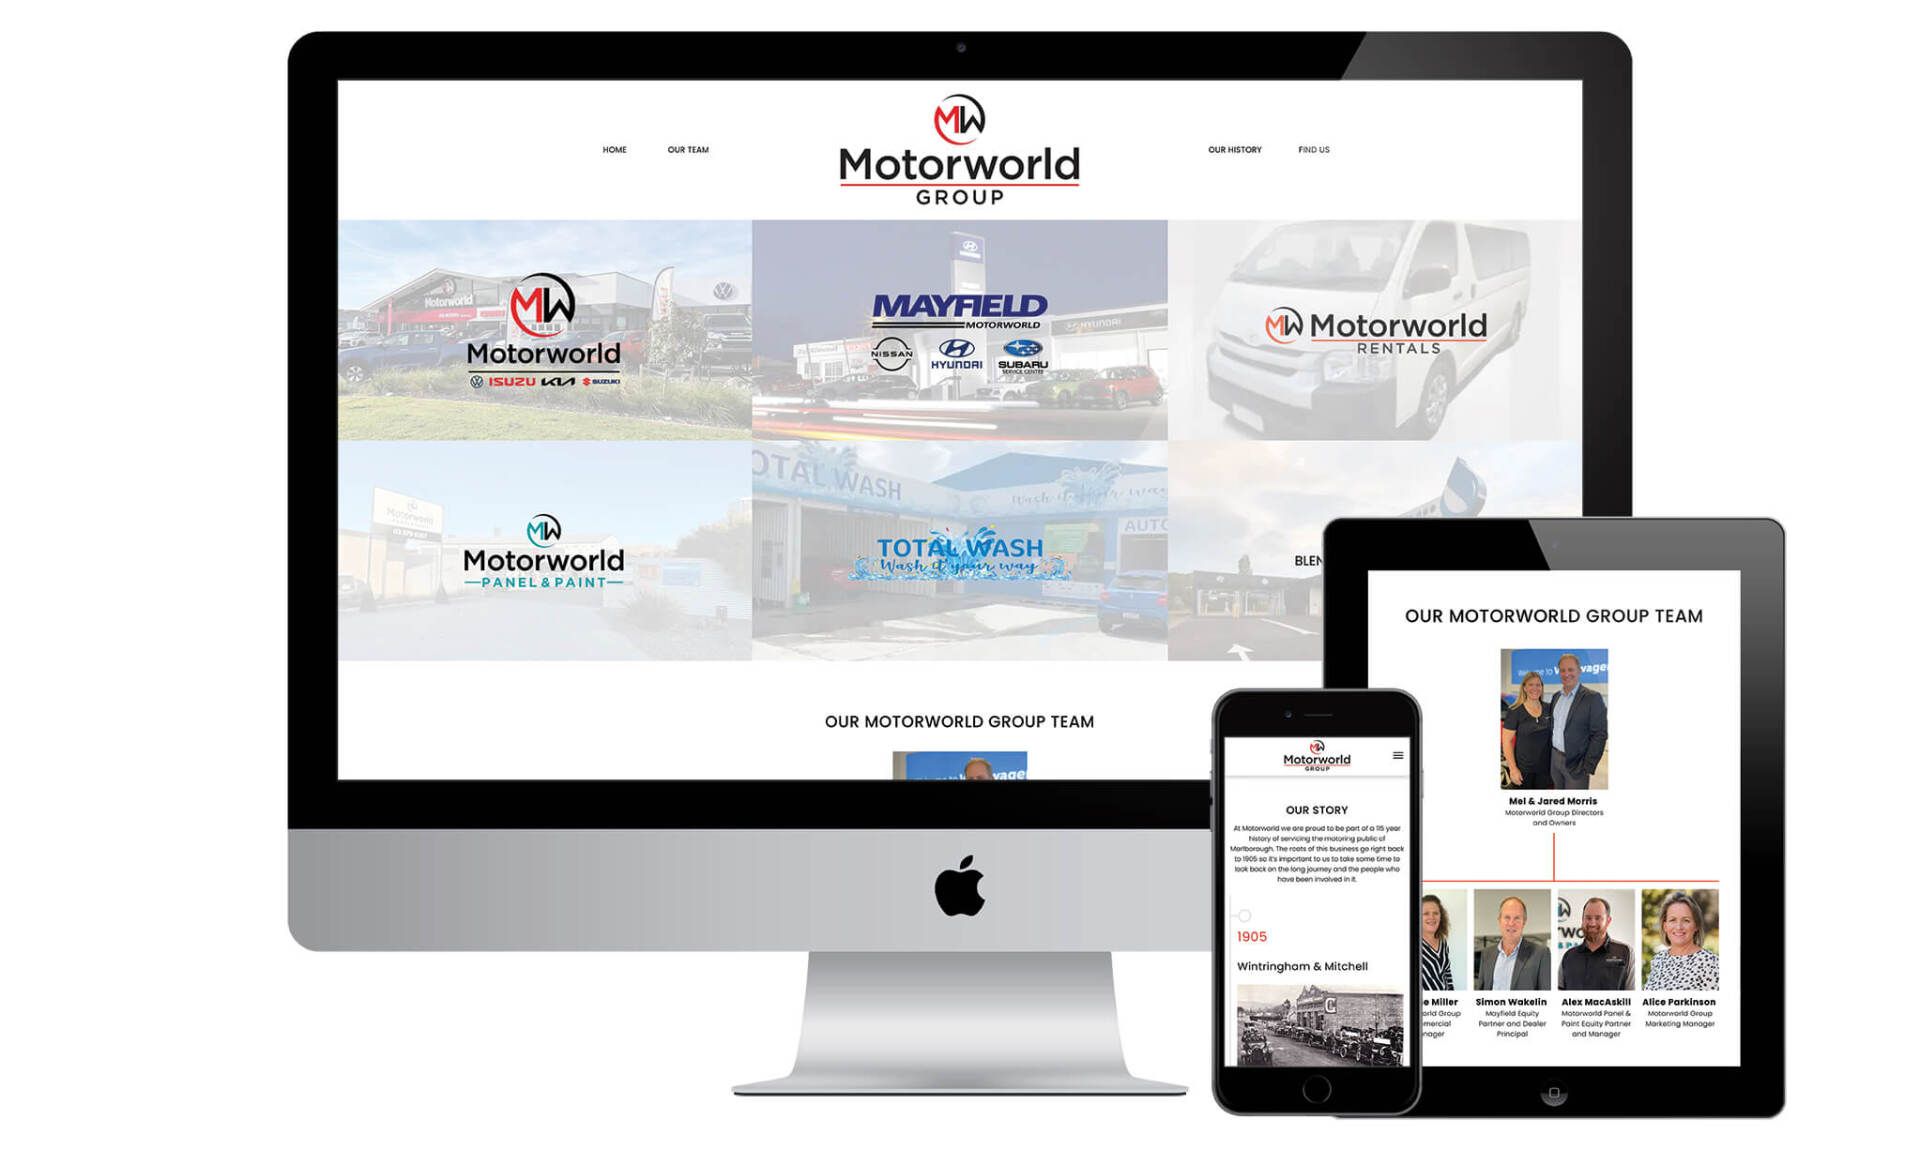 Motorworld Group website designed by Vanilla Hayes creative graphic design  studio in Blenheim, Marlborough, New Zealand